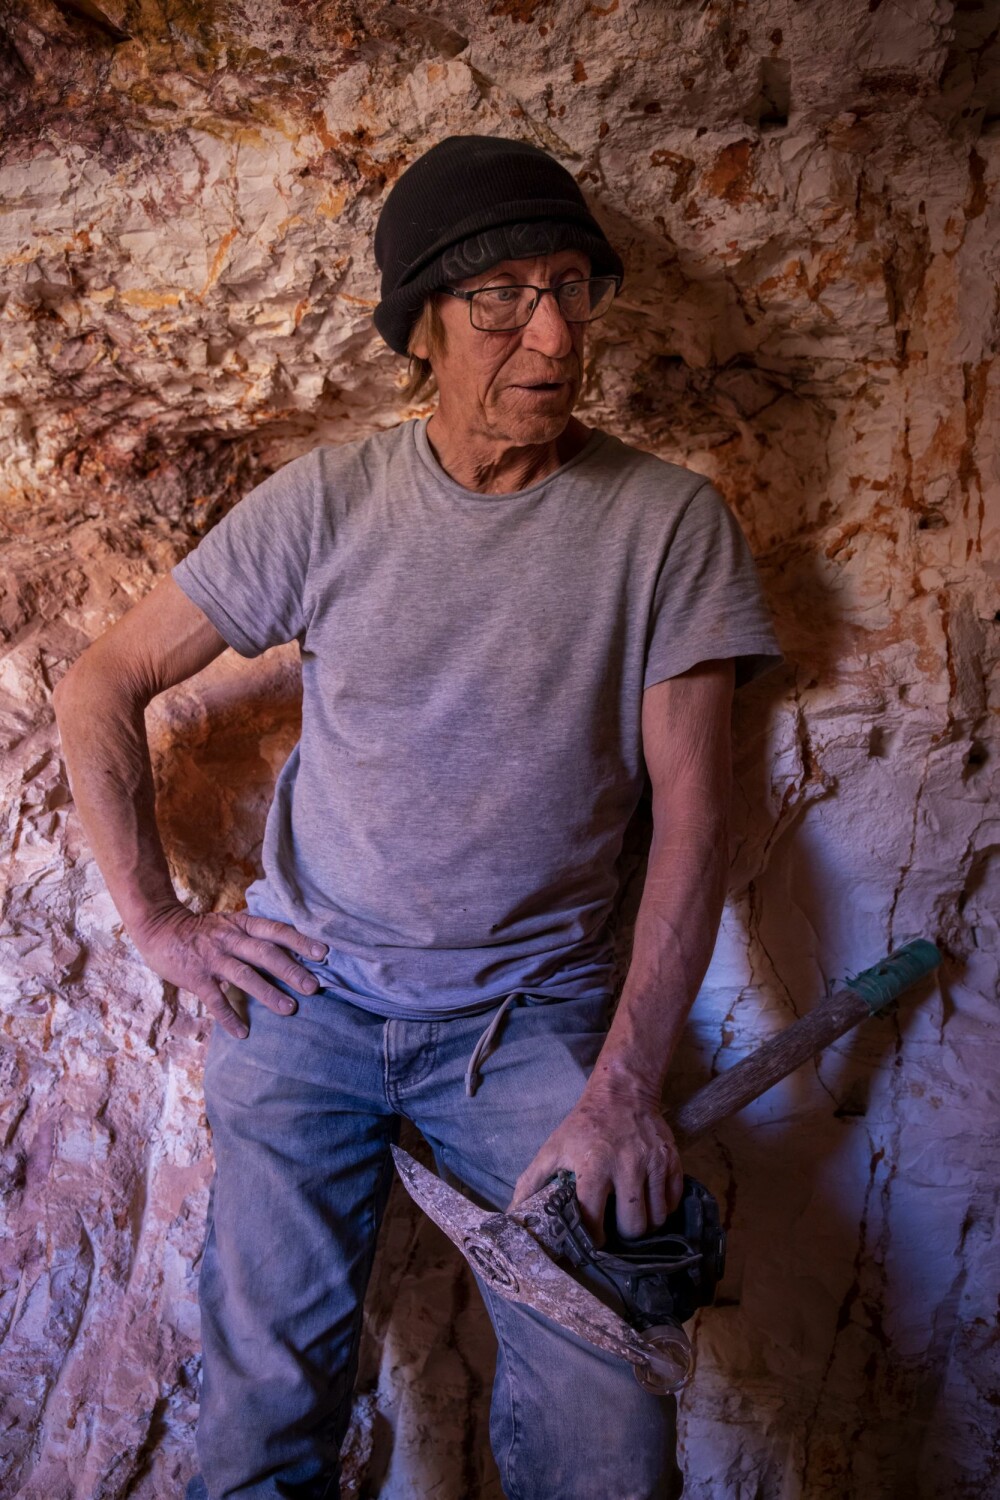 <b>TENKER OFTE:</b> Rusty pleier ofte å avslutte en dag under bakken med å tenke. Han studerer gruveveggene og prøver å tenke ut hvor opalene kan ligge begravd ved å se på tegninger i veggene.